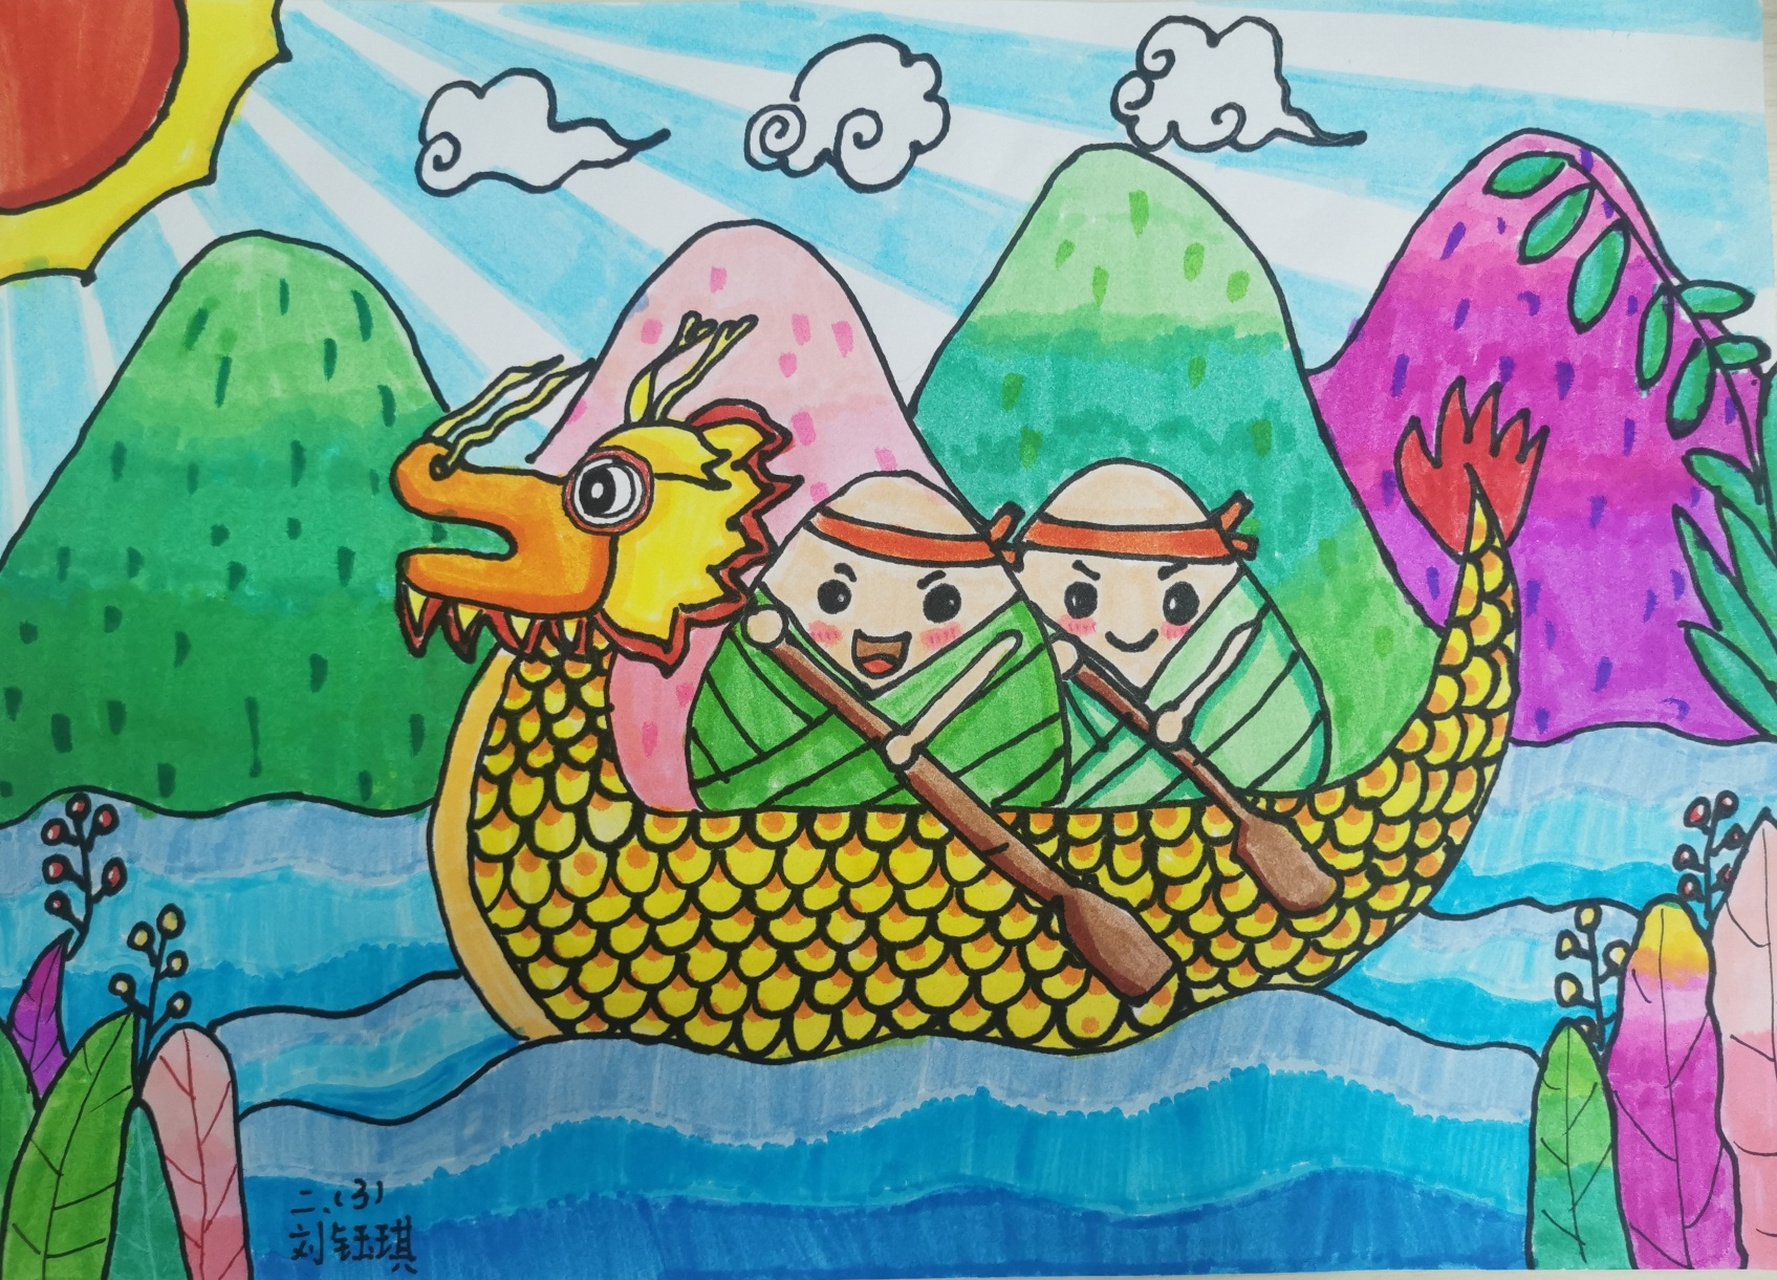 端午节创意儿童画/传统节日学生作品分享 端午节快要来了~ 很多小朋友